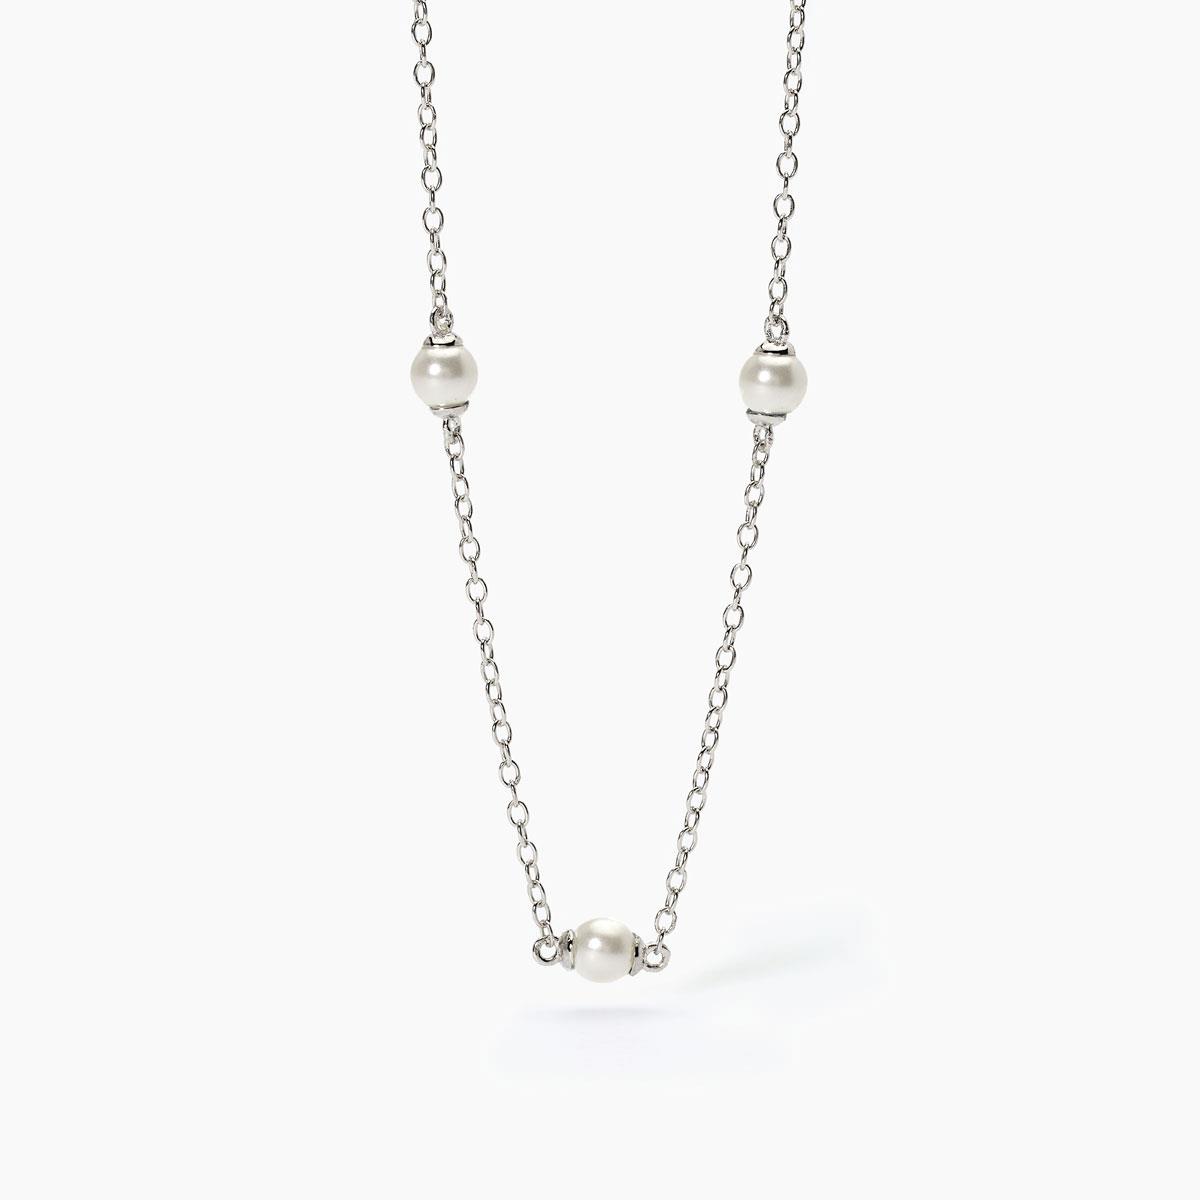 Gioielli linea bambino - Girocollo in argento perle conchiglia Ref. 553615 - MABINA